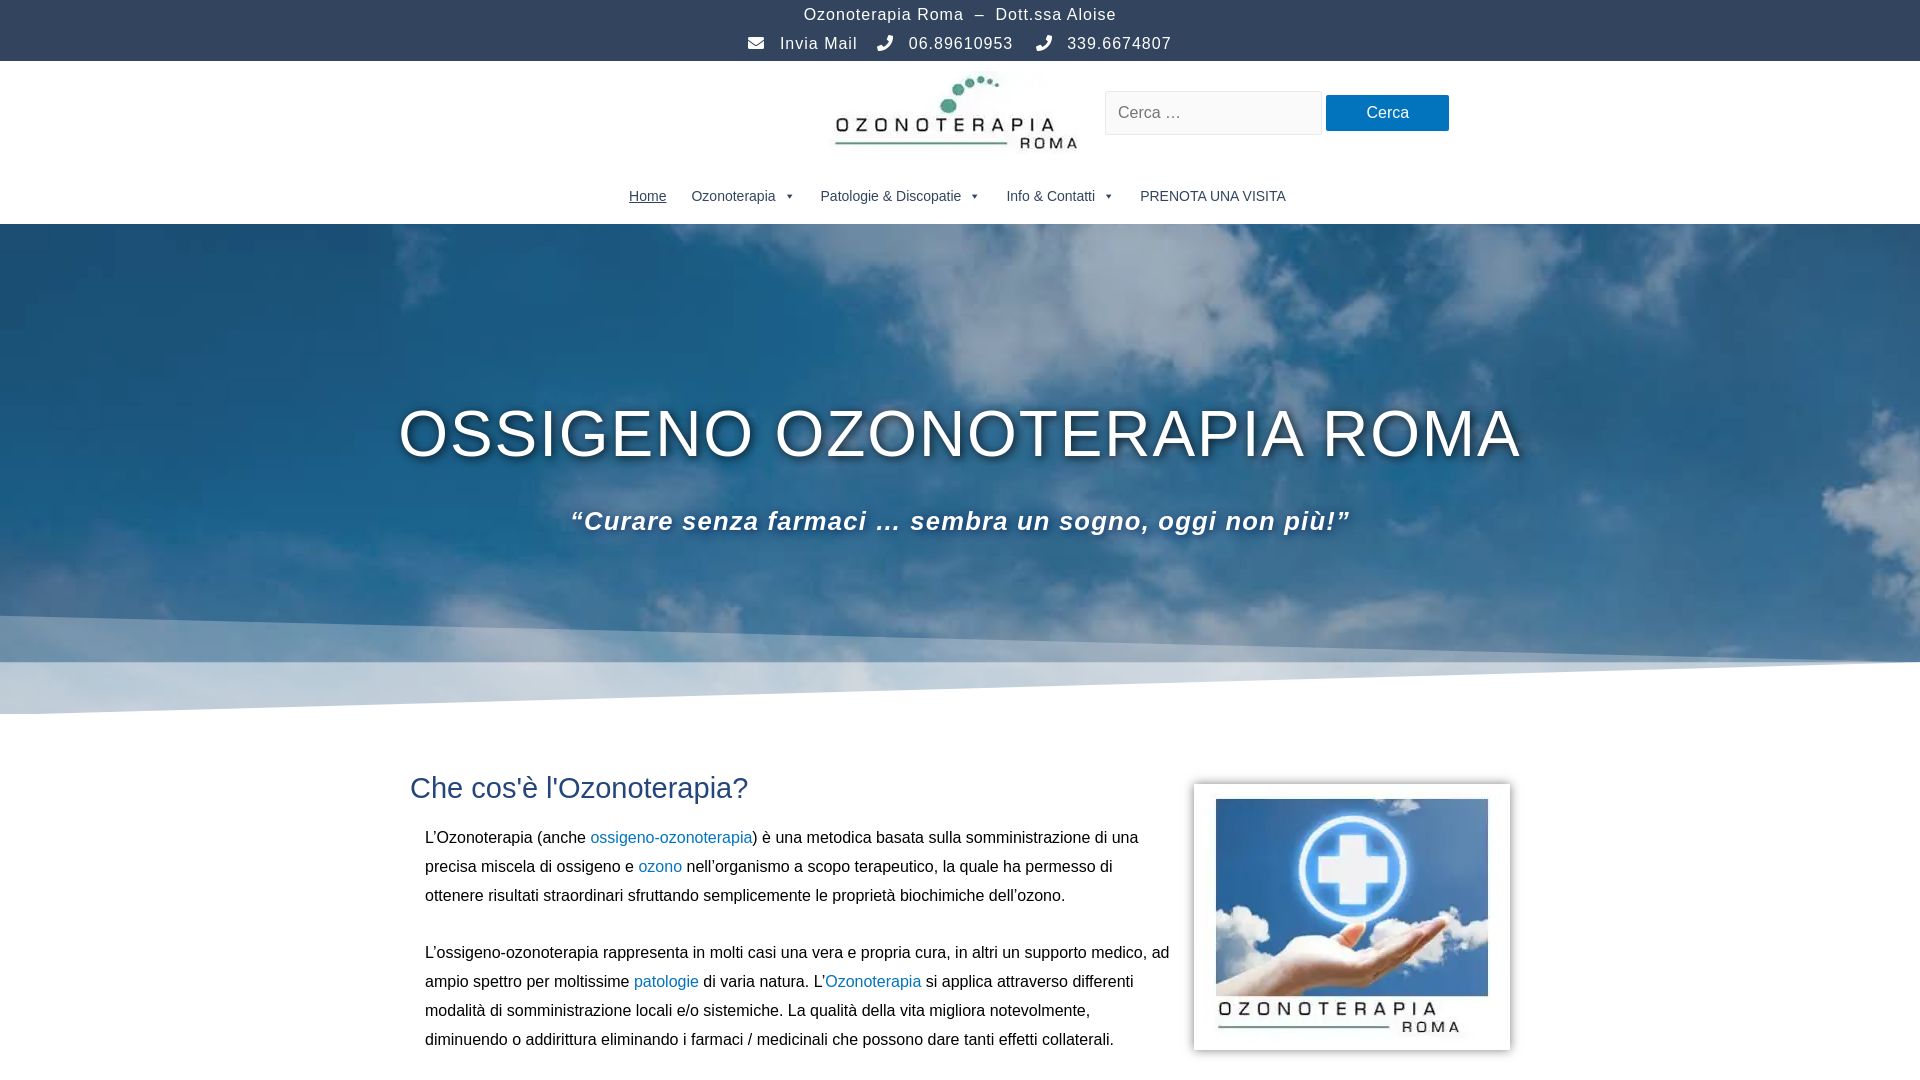 État du site web ozonoterapiaroma.it est   EN LIGNE